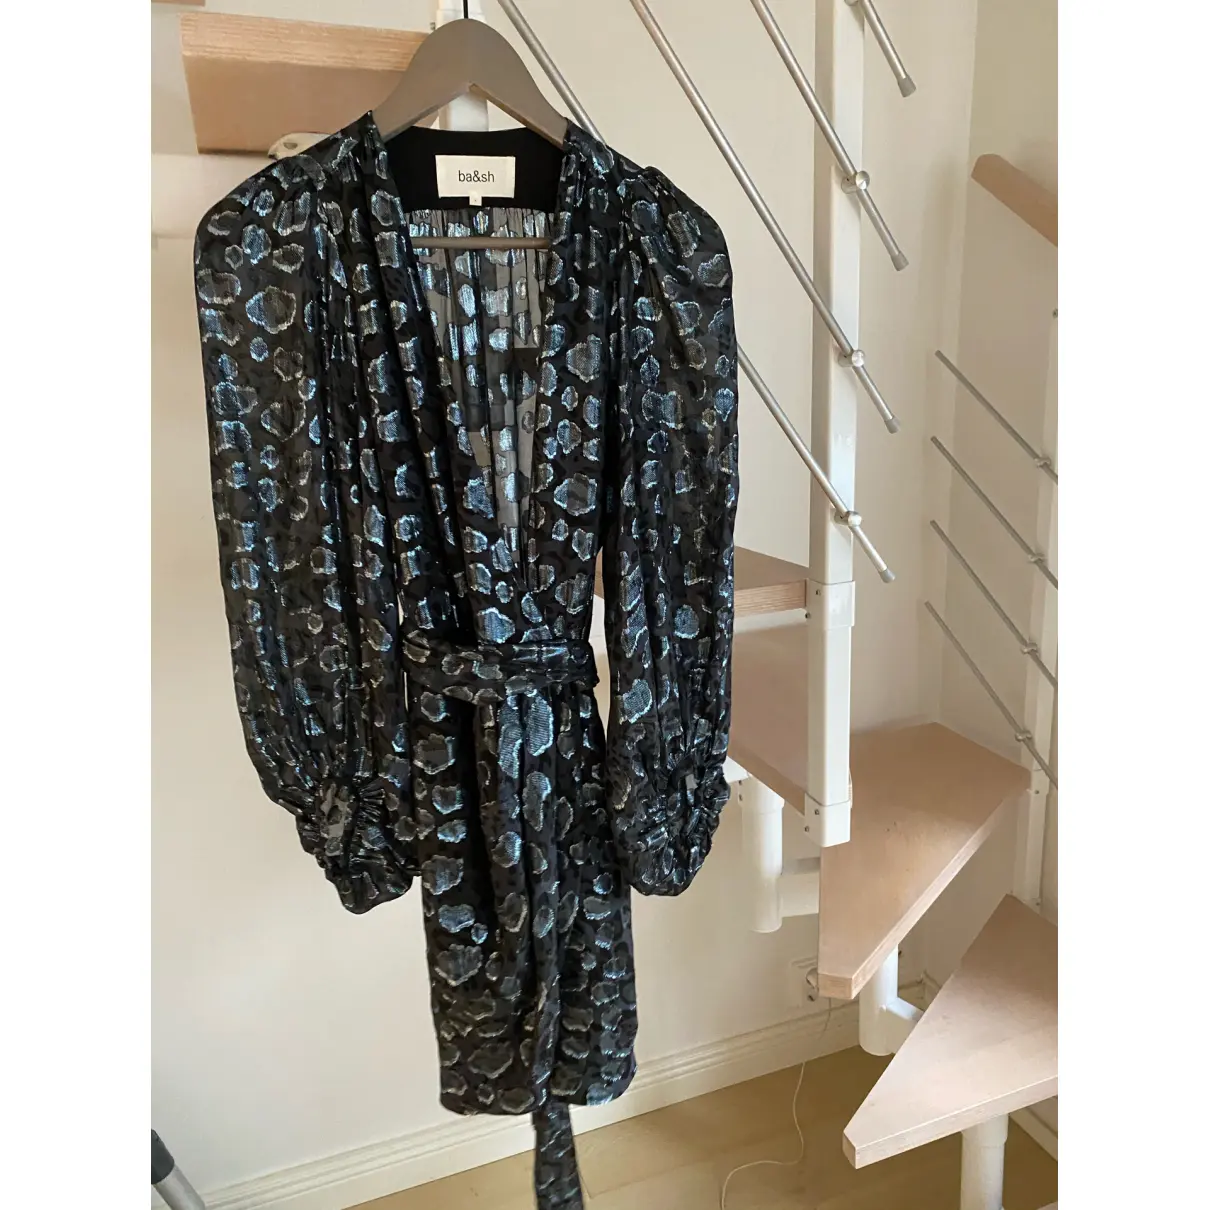 Buy Ba&sh Fall Winter 2020 silk mini dress online